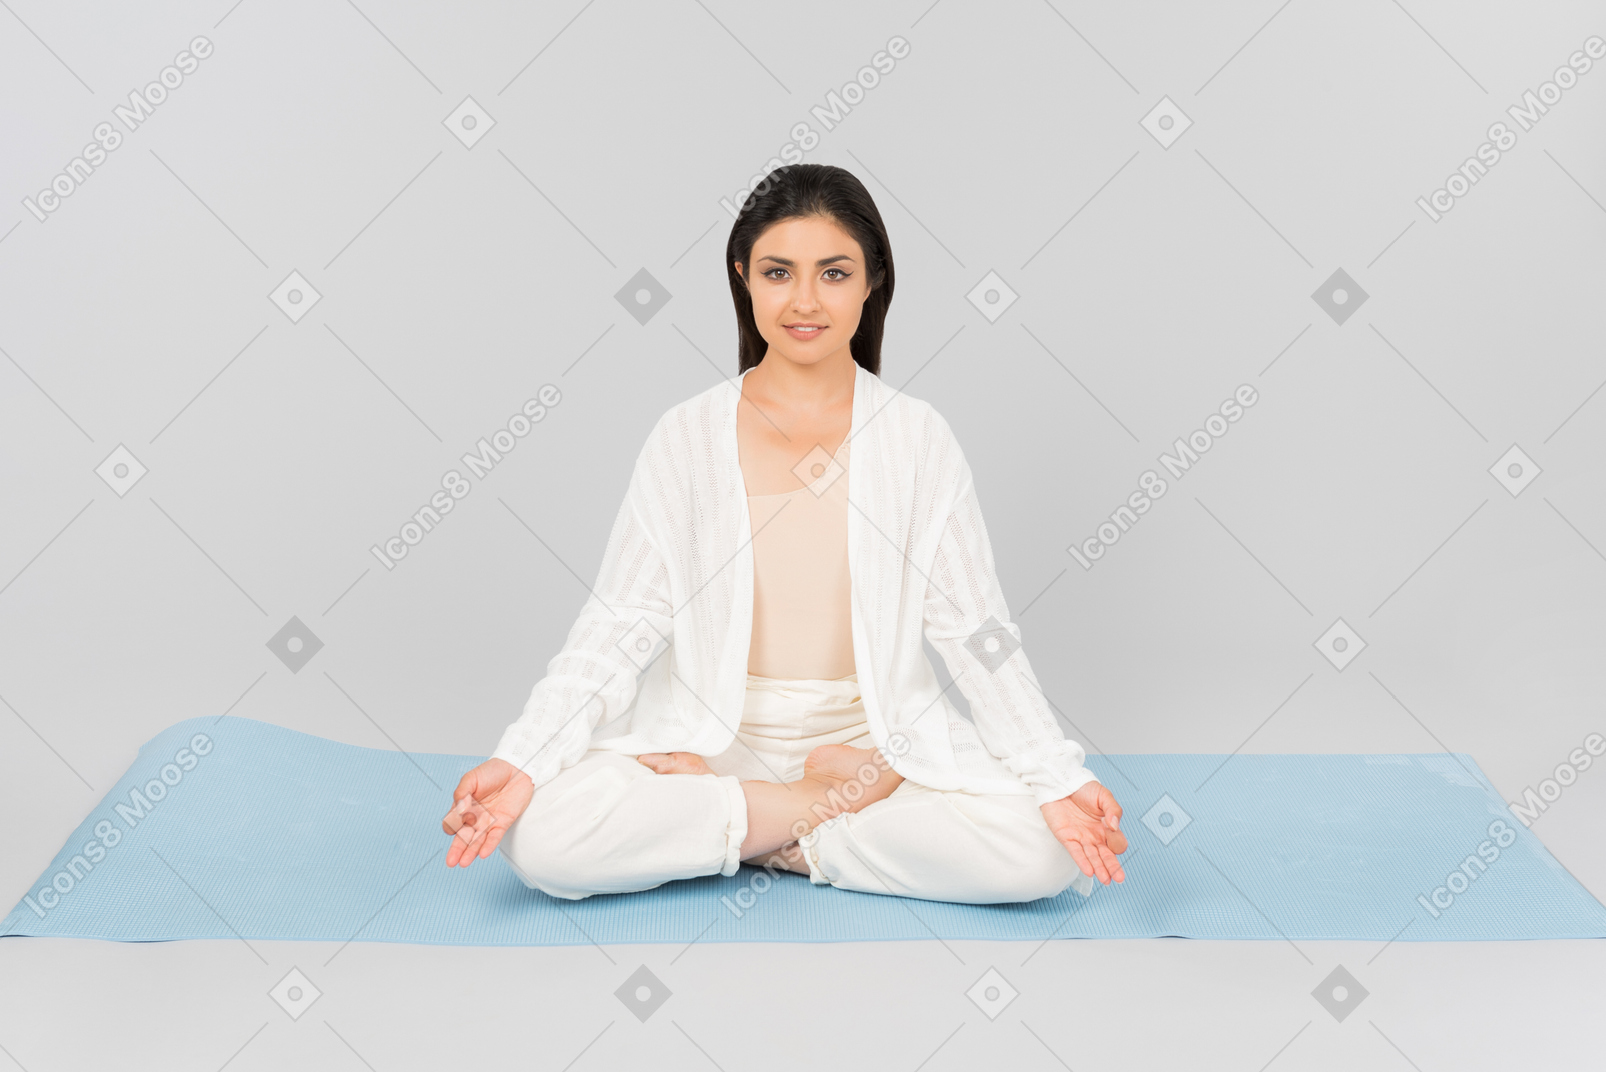 Indiana mulher sentada com as pernas cruzadas no tapete de ioga